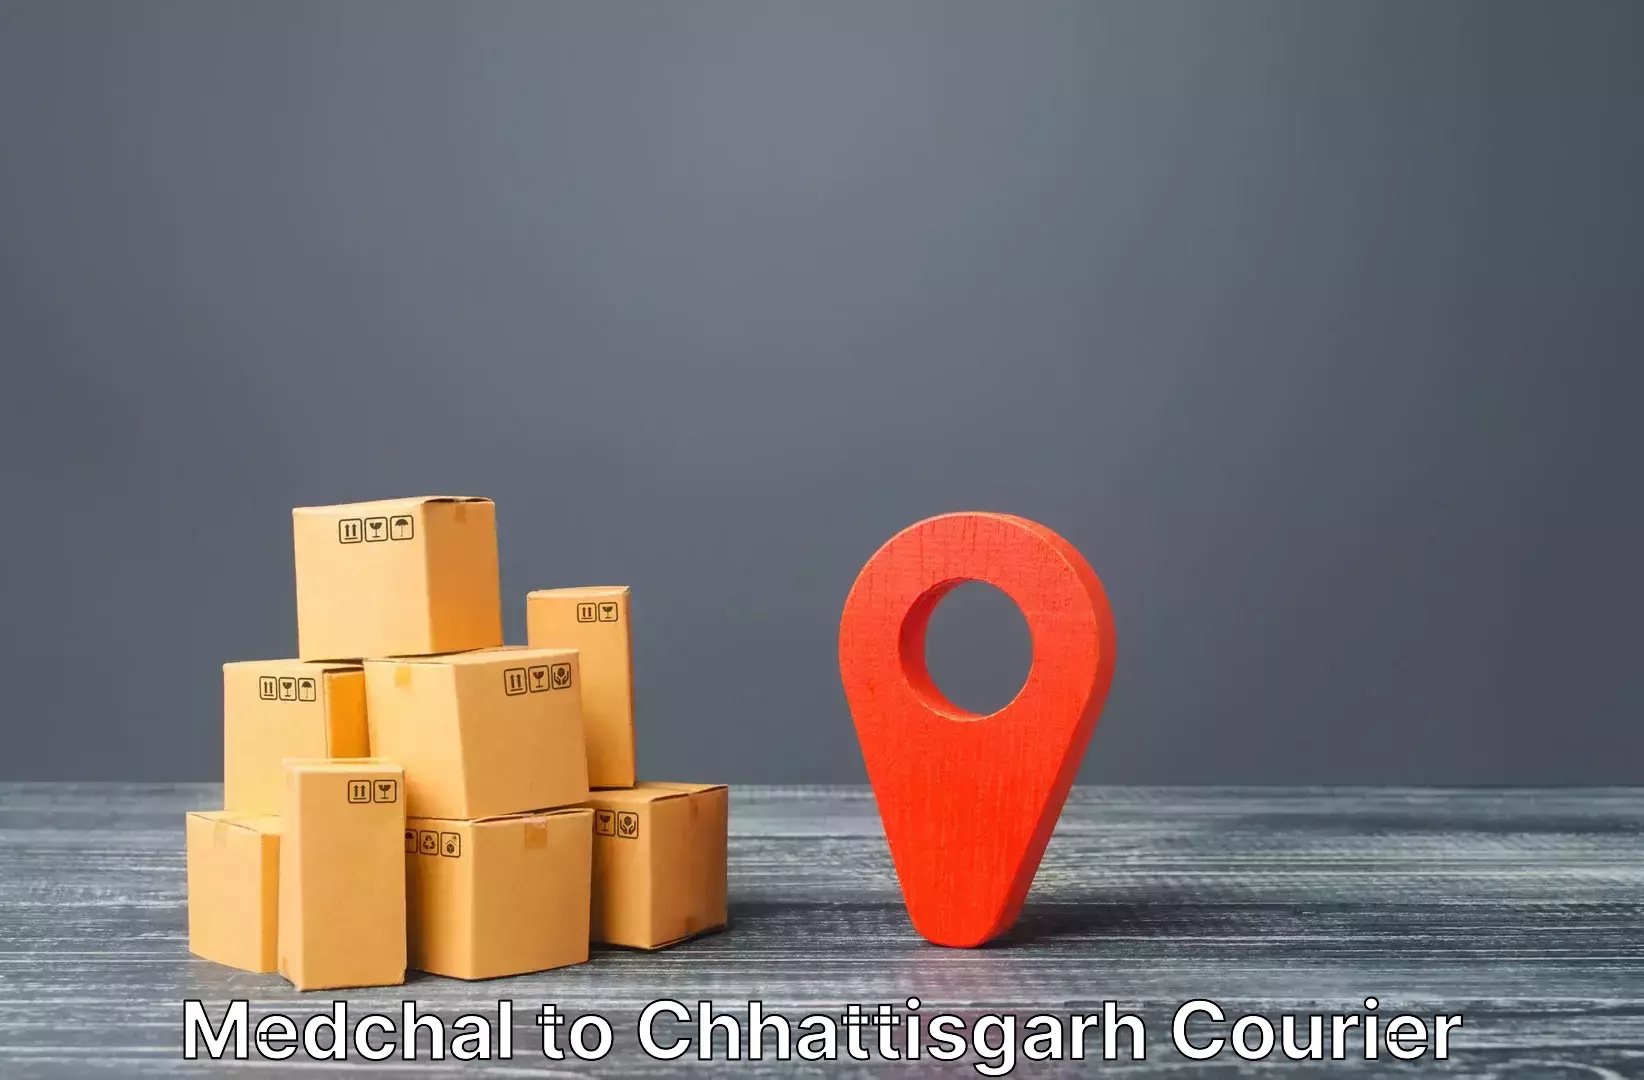 Luggage delivery estimate Medchal to Bijapur Chhattisgarh